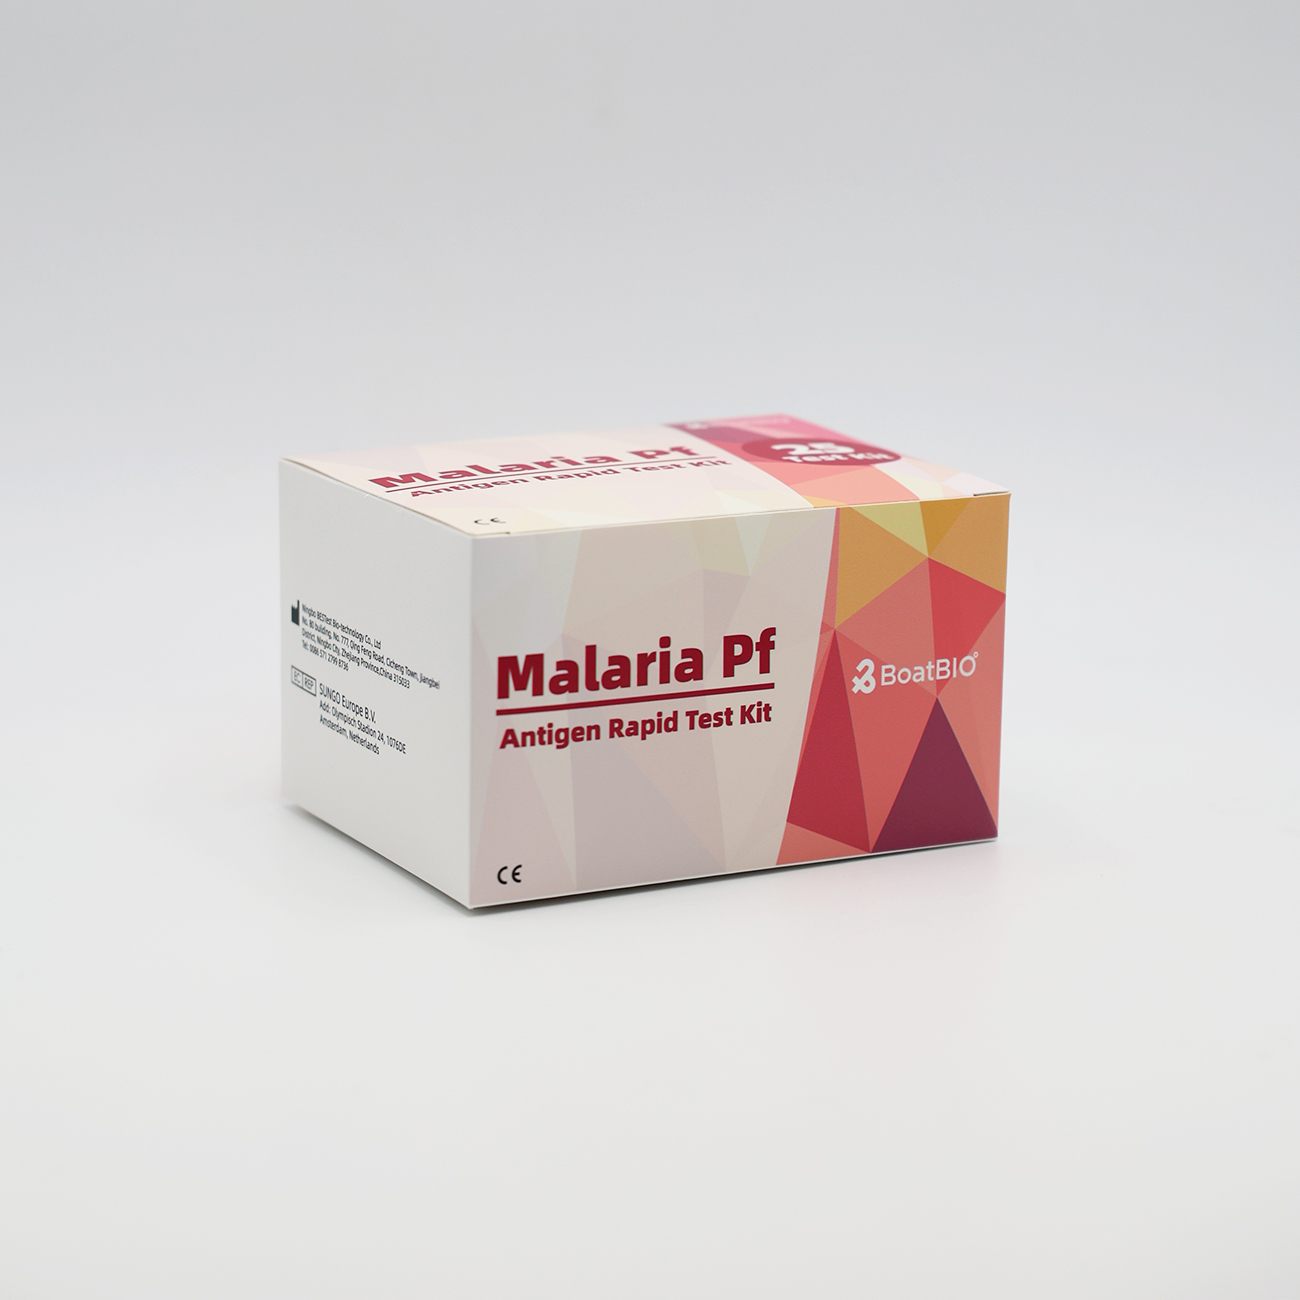 Malaria Pf Antigen Rapid Test Kit (Colloidal Gold)